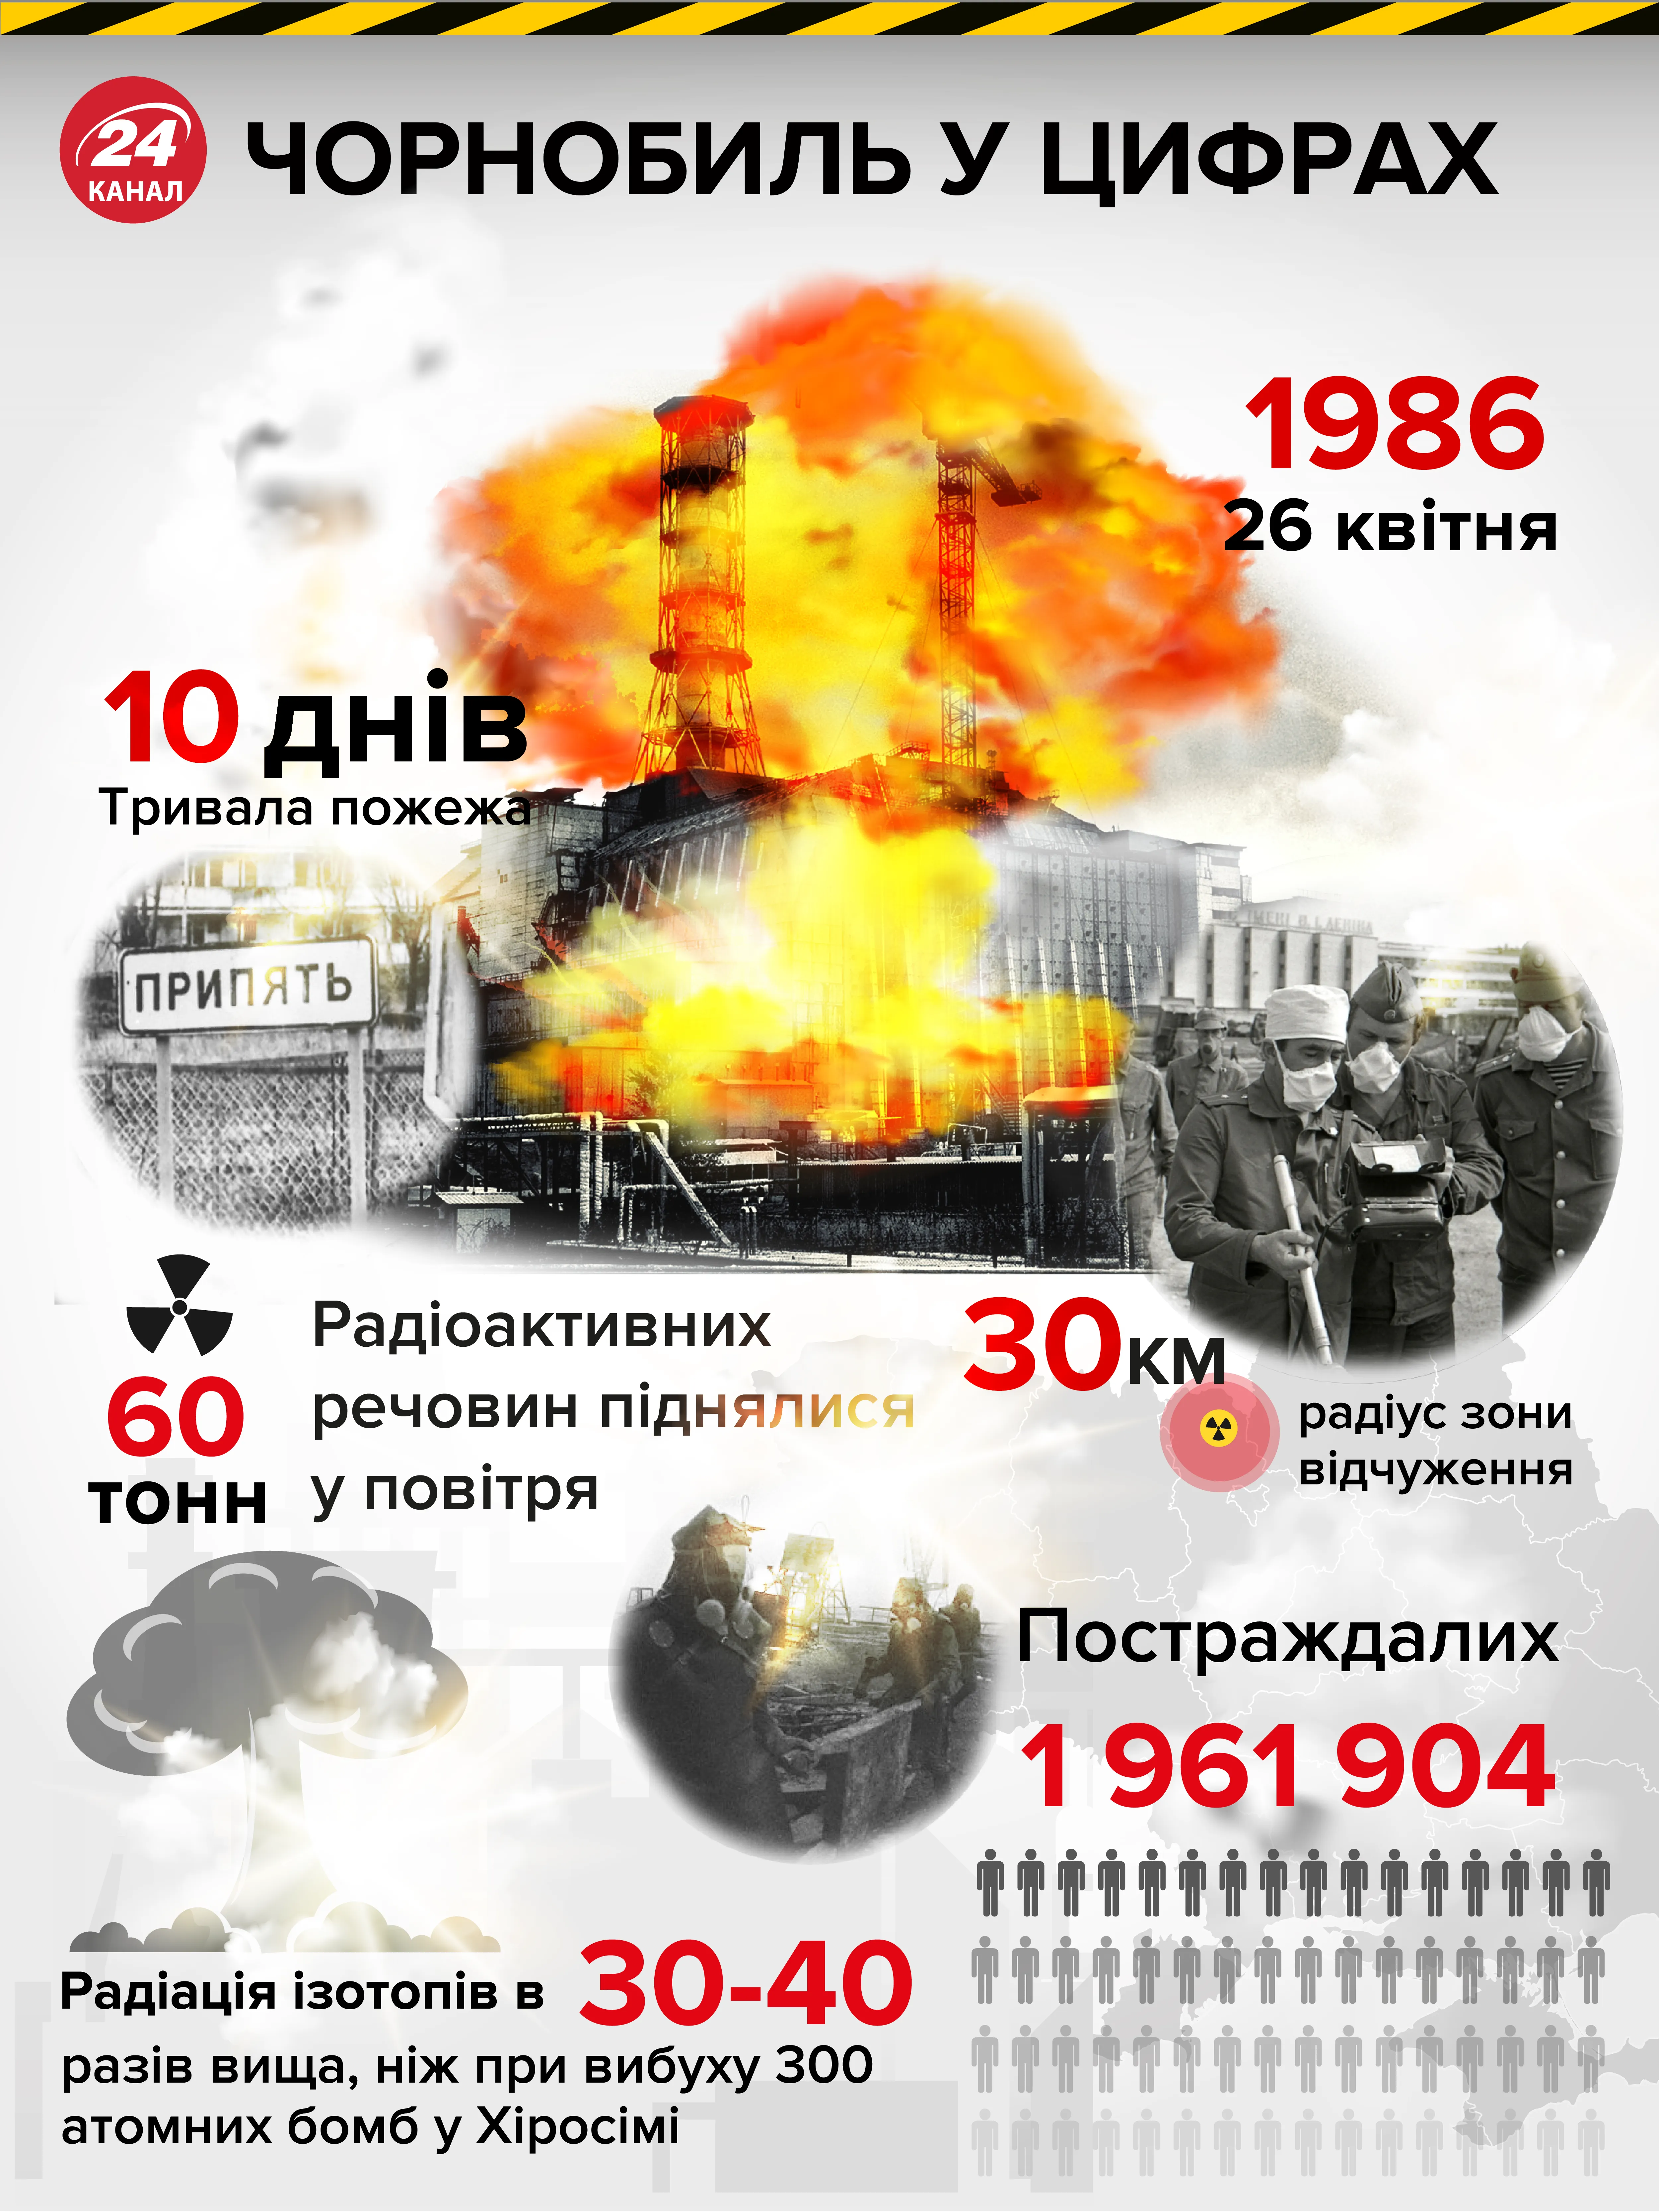 Чорнобиль Чорнобильська трагедія вибух на ЧАЕС